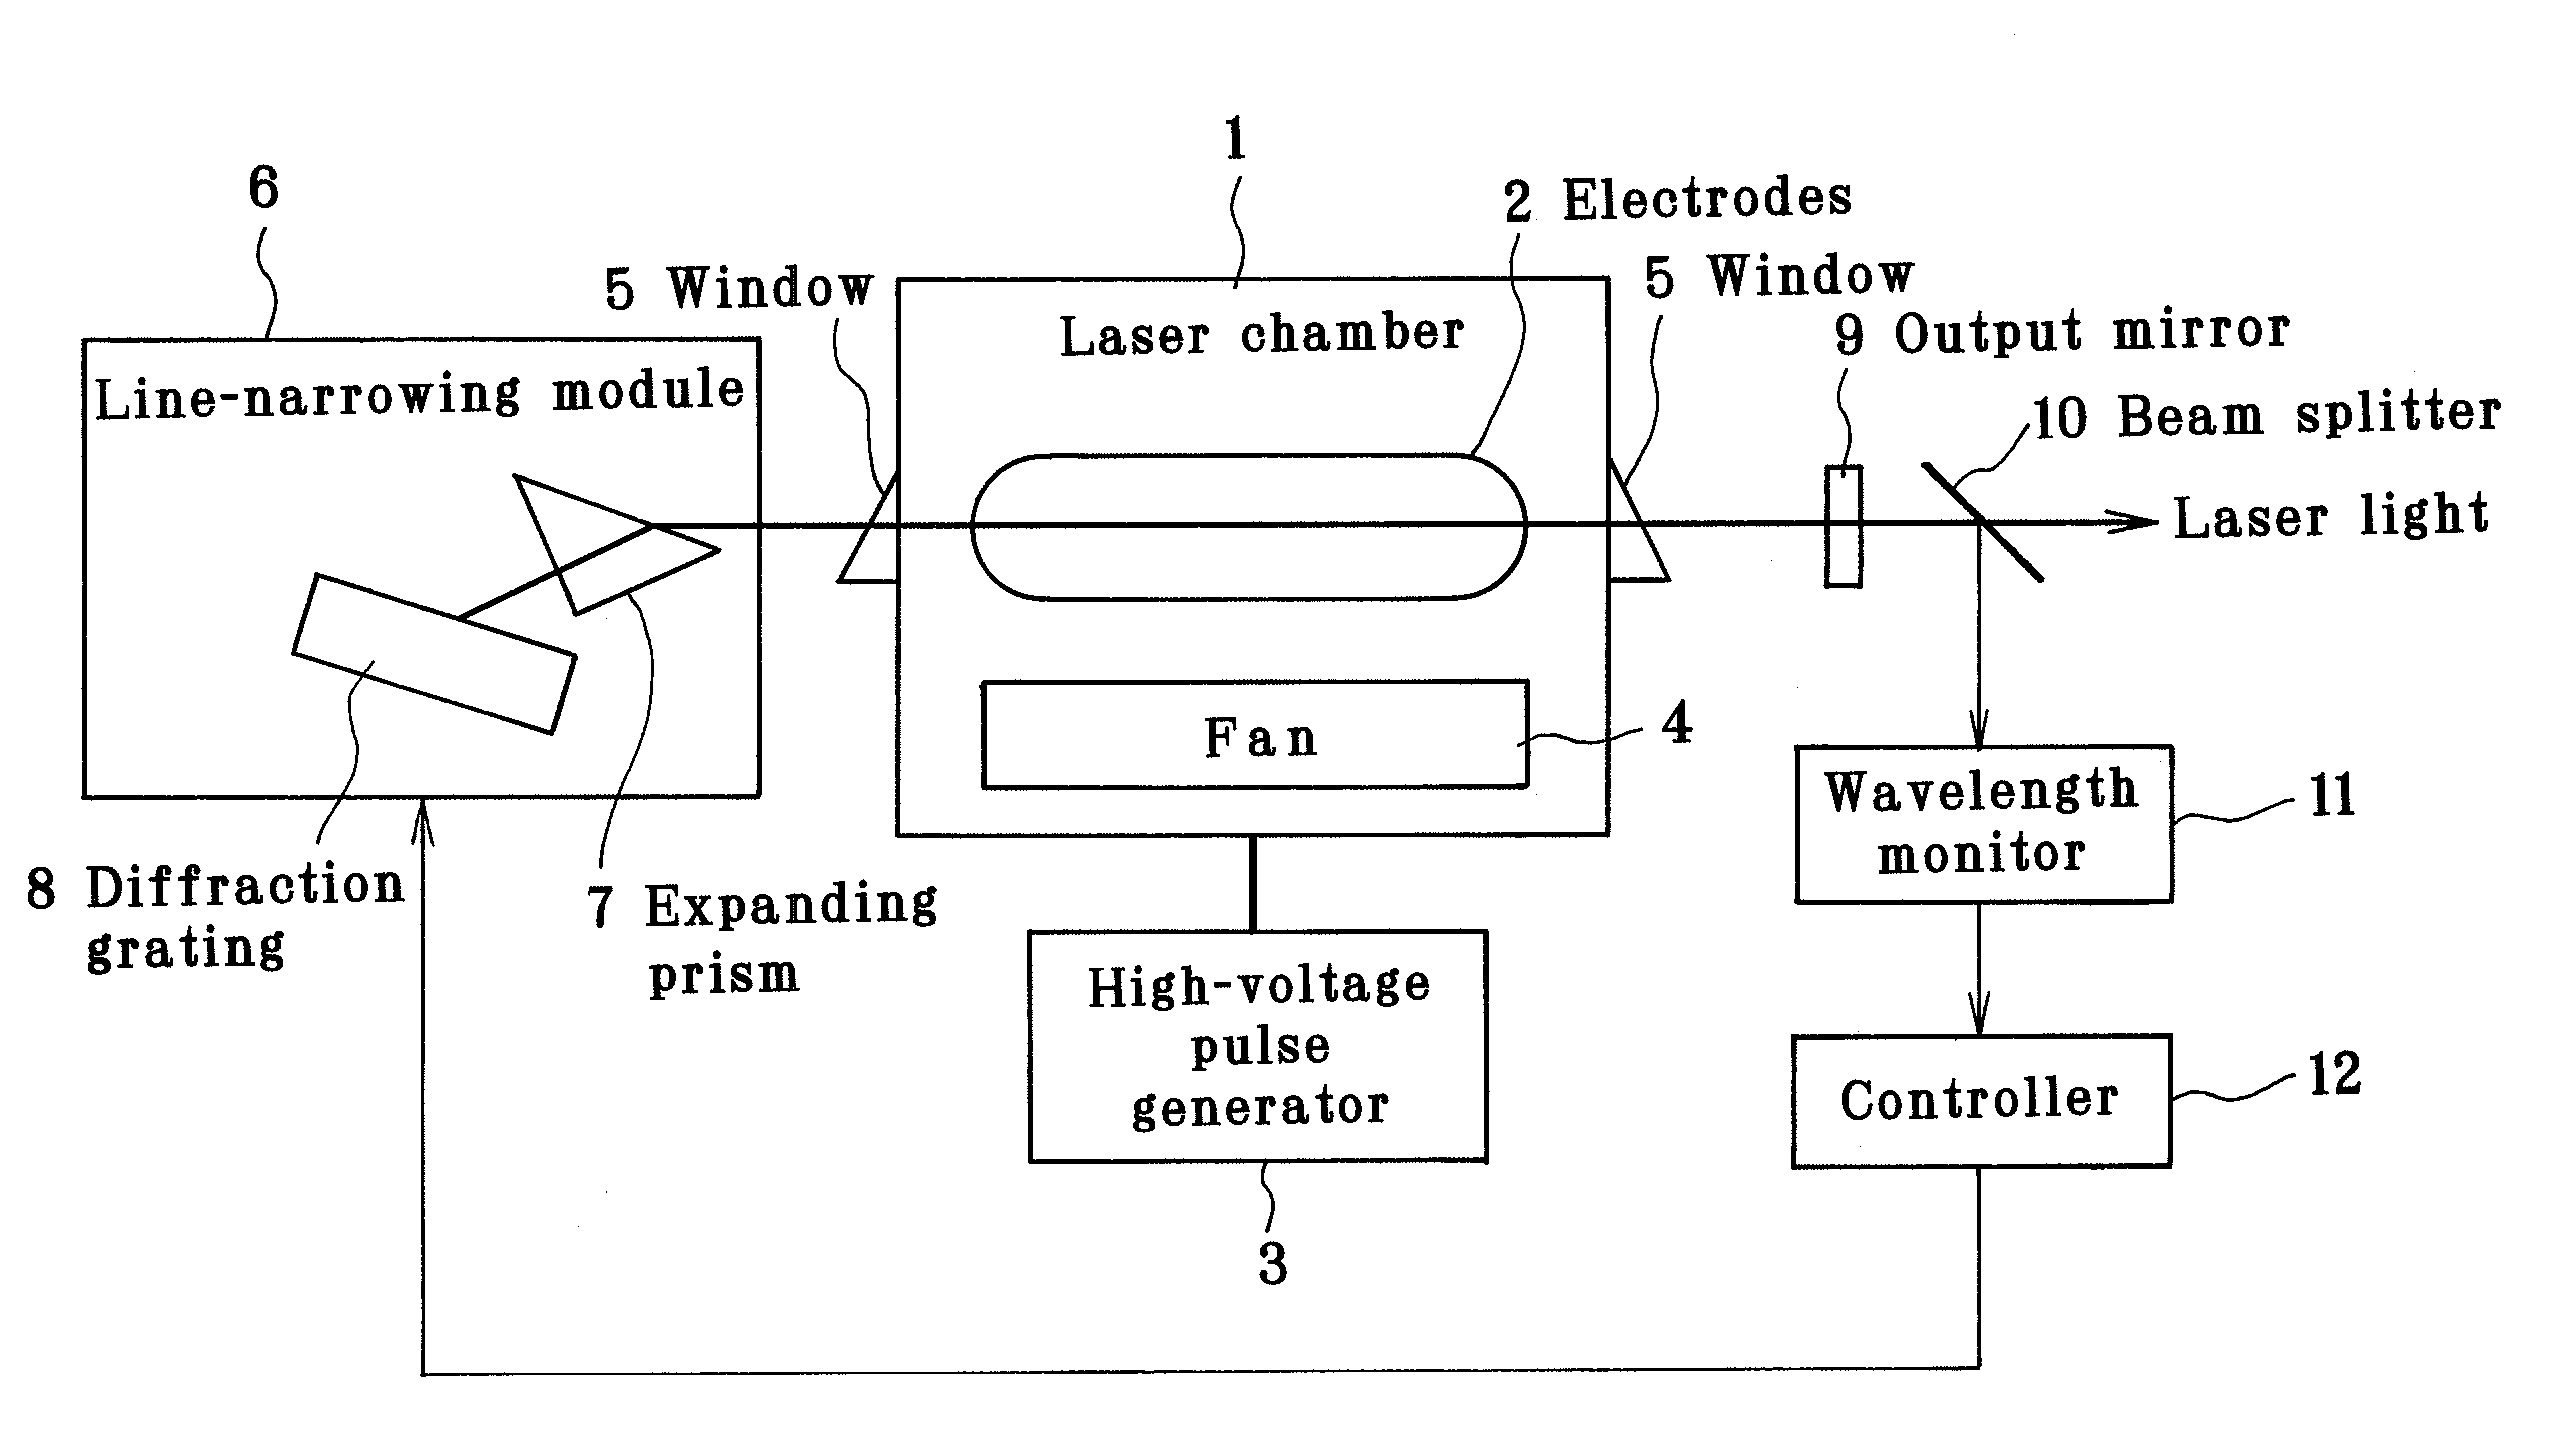 Line-narrowed gas laser system